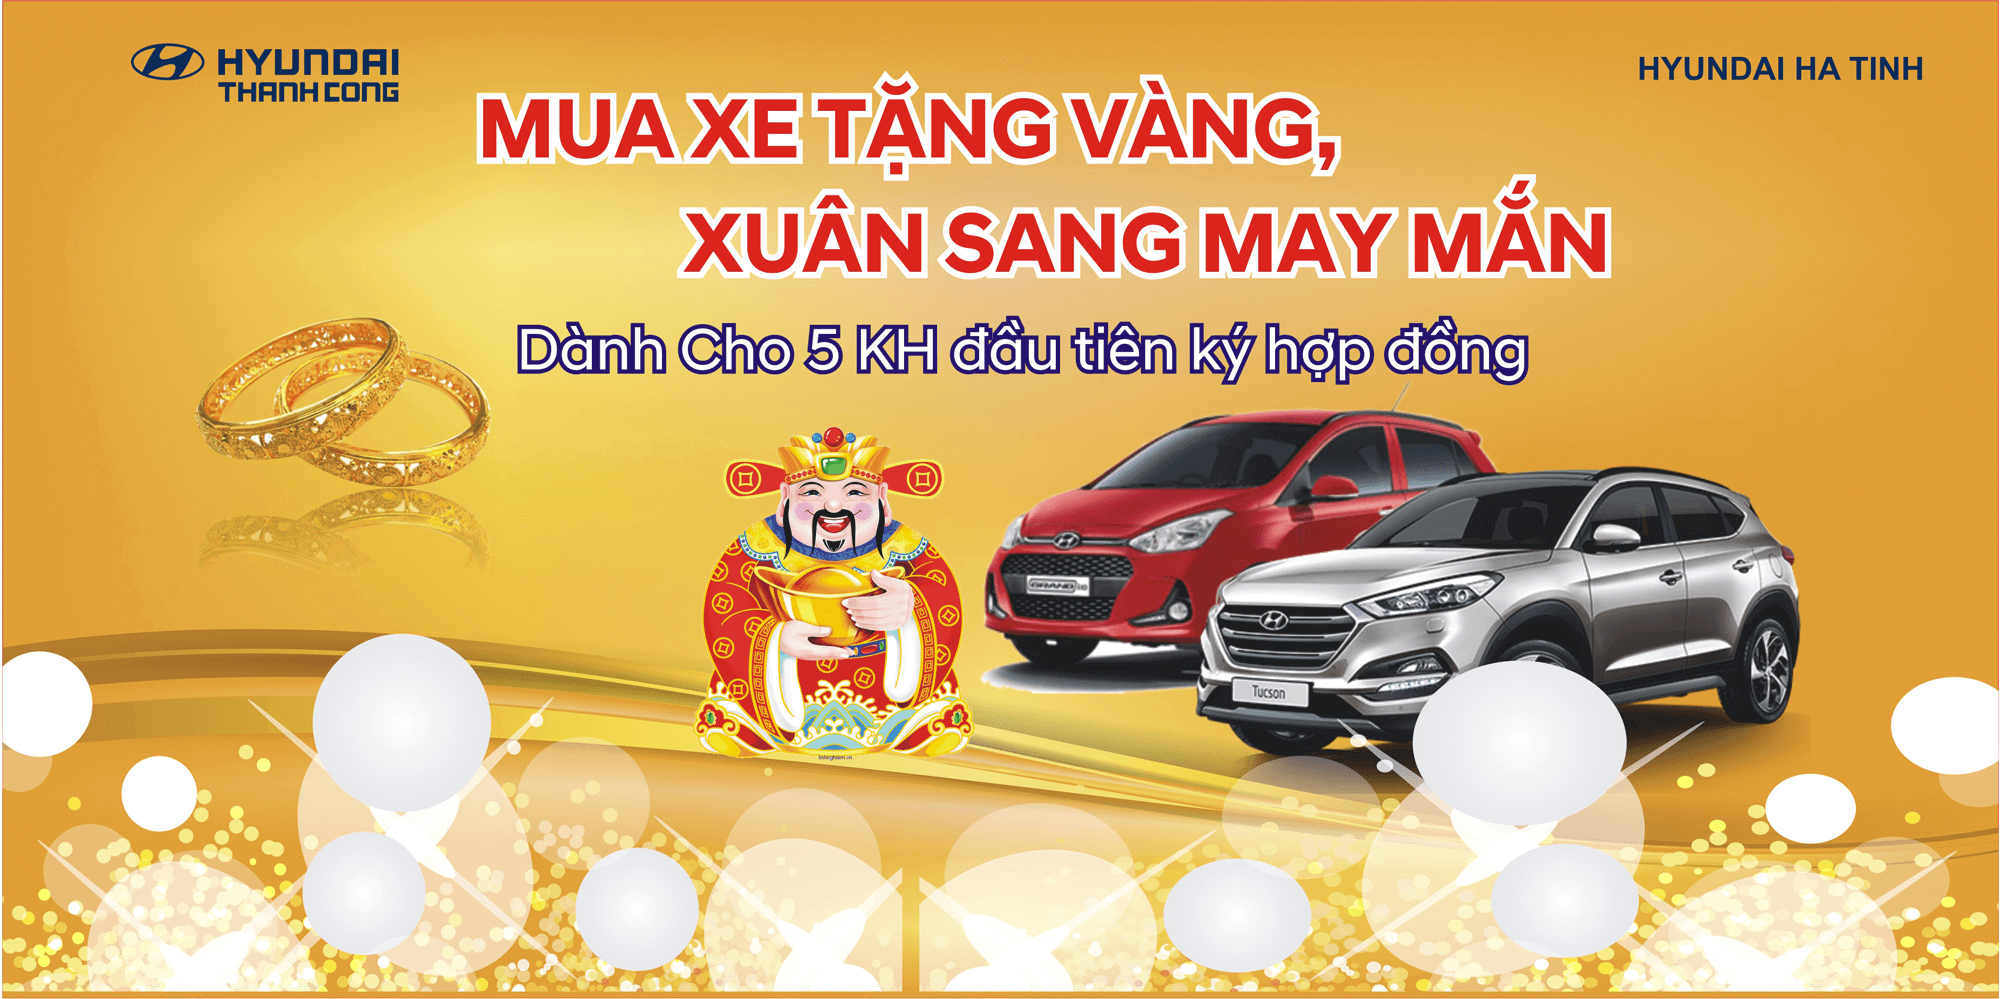 Mua xe tặng vàng, xuân sang may mắn cùng Hyundai Hà Tĩnh